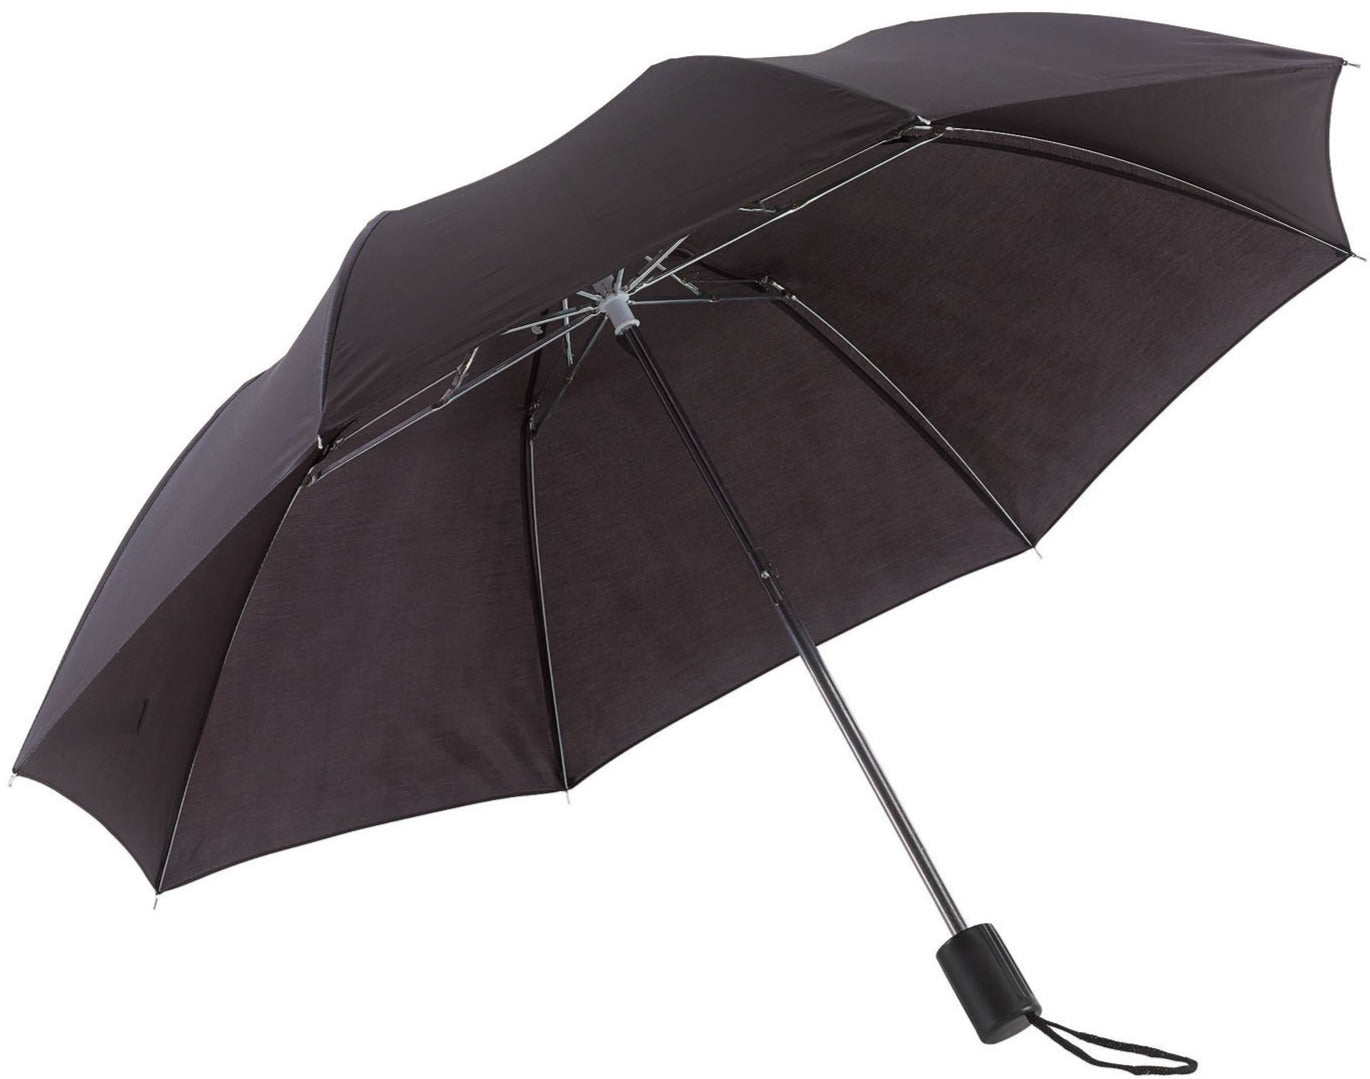 Μαύρη ομπρέλα βροχής, σπαστή, απλή, και σε πολλά χρώματα.